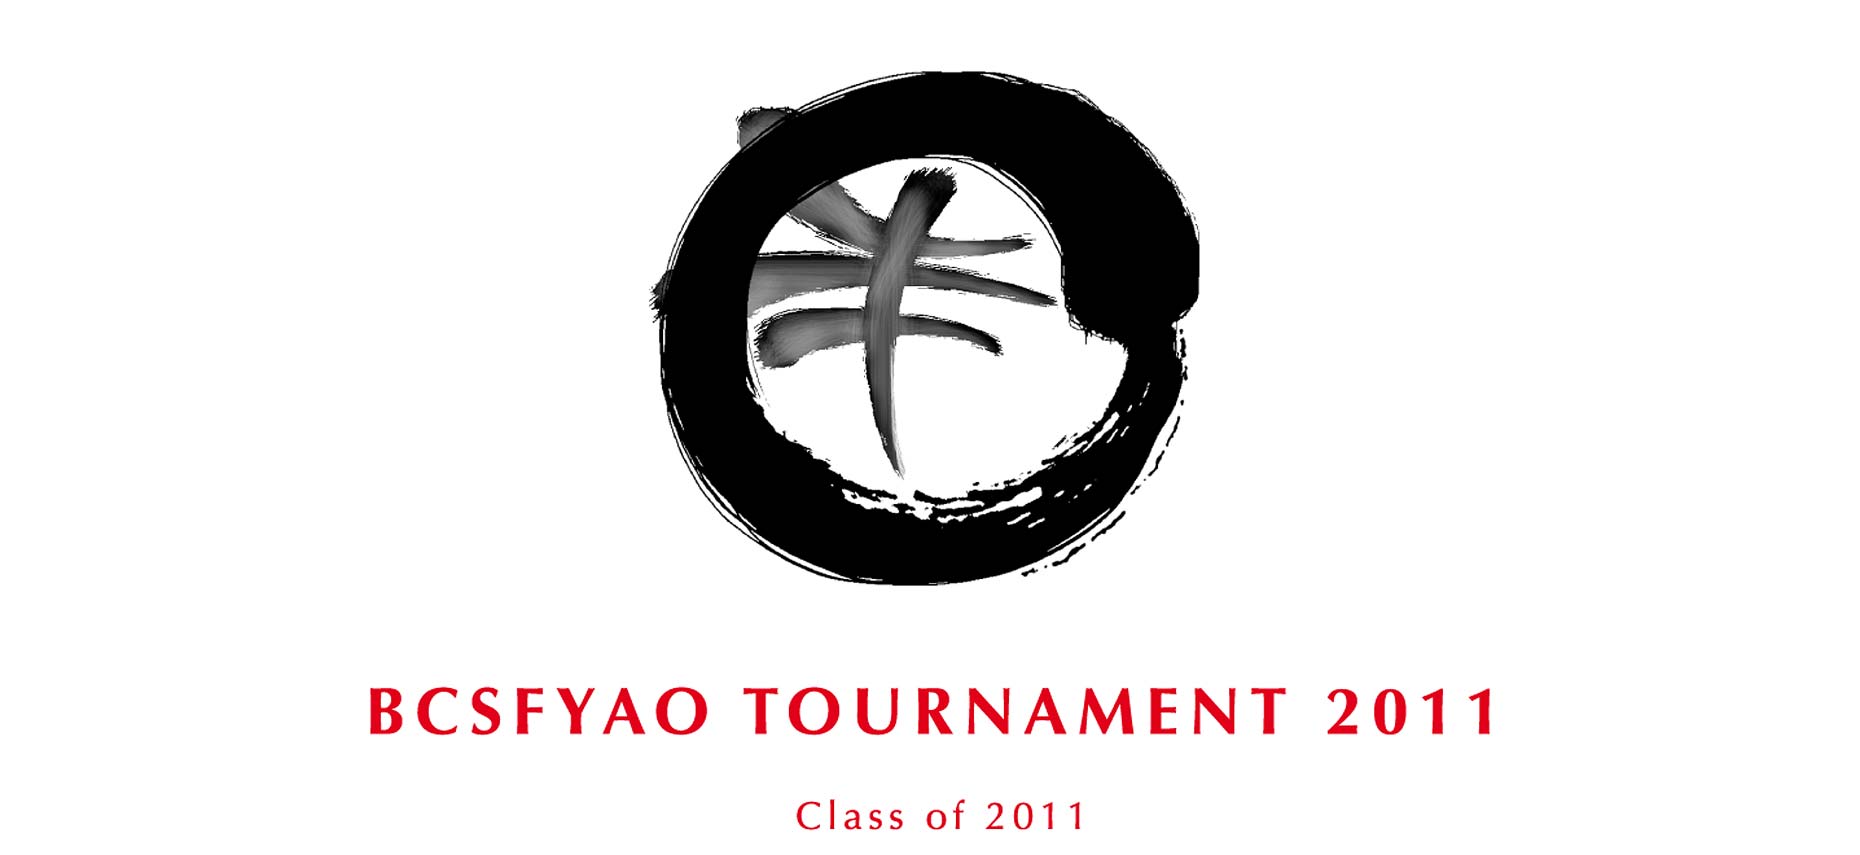 09-YAO_logo1_Class2011_Web